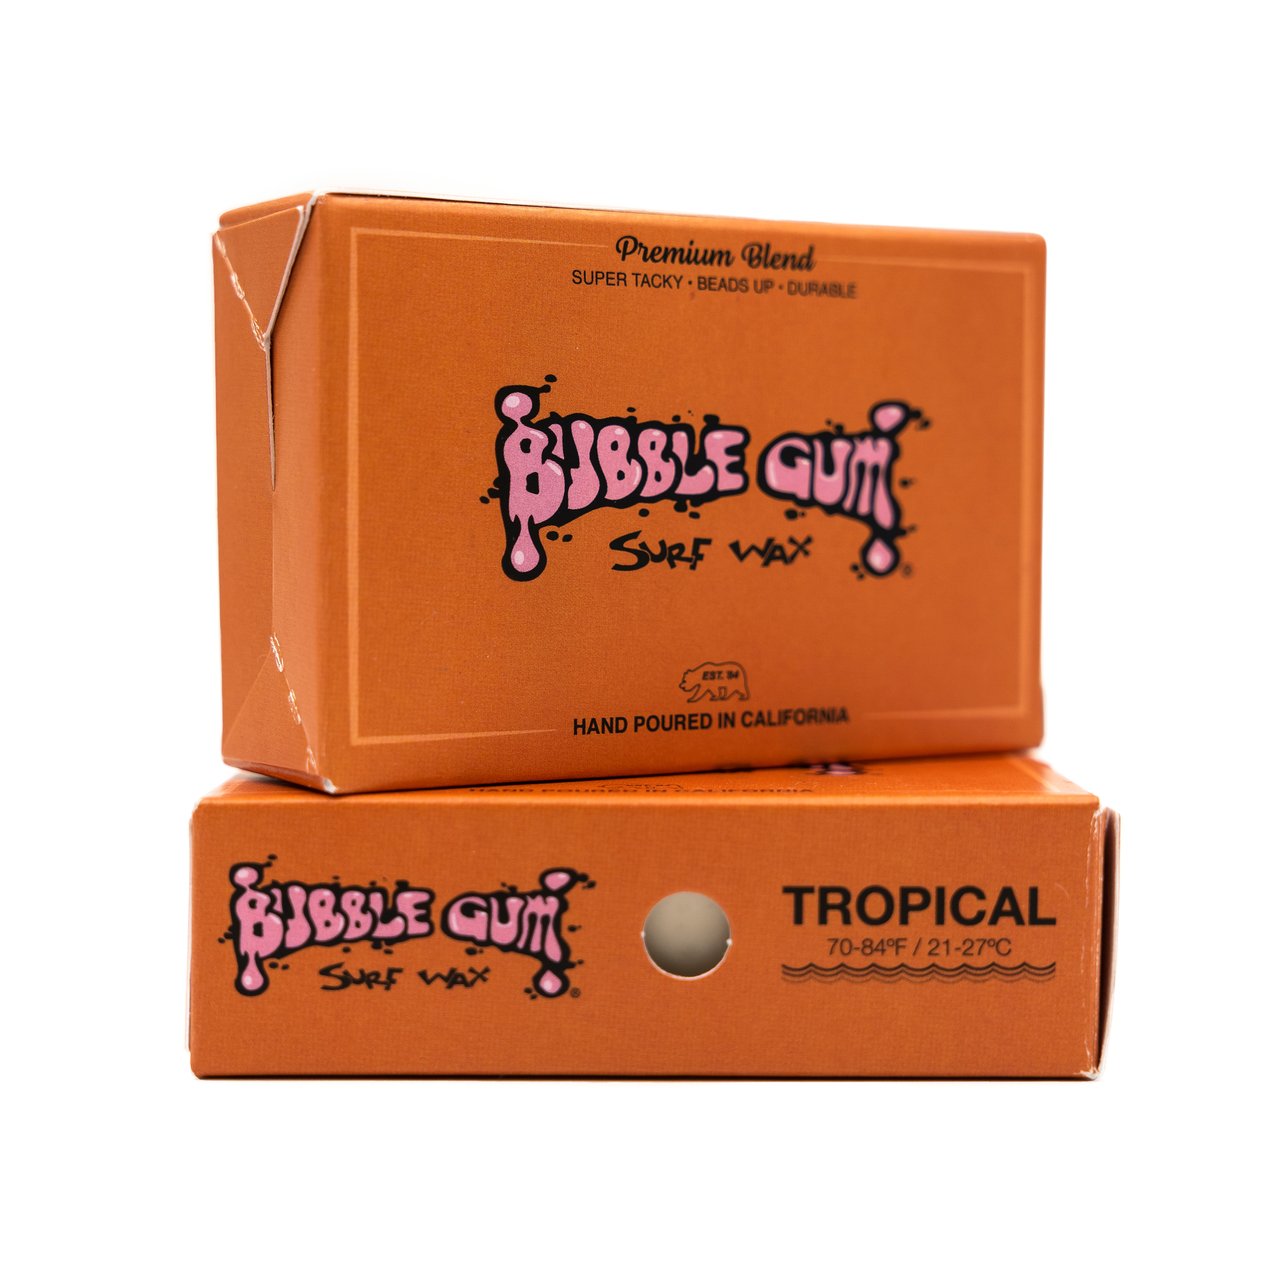 Bubble Gum Surf Wax Premium Blend - Tropical